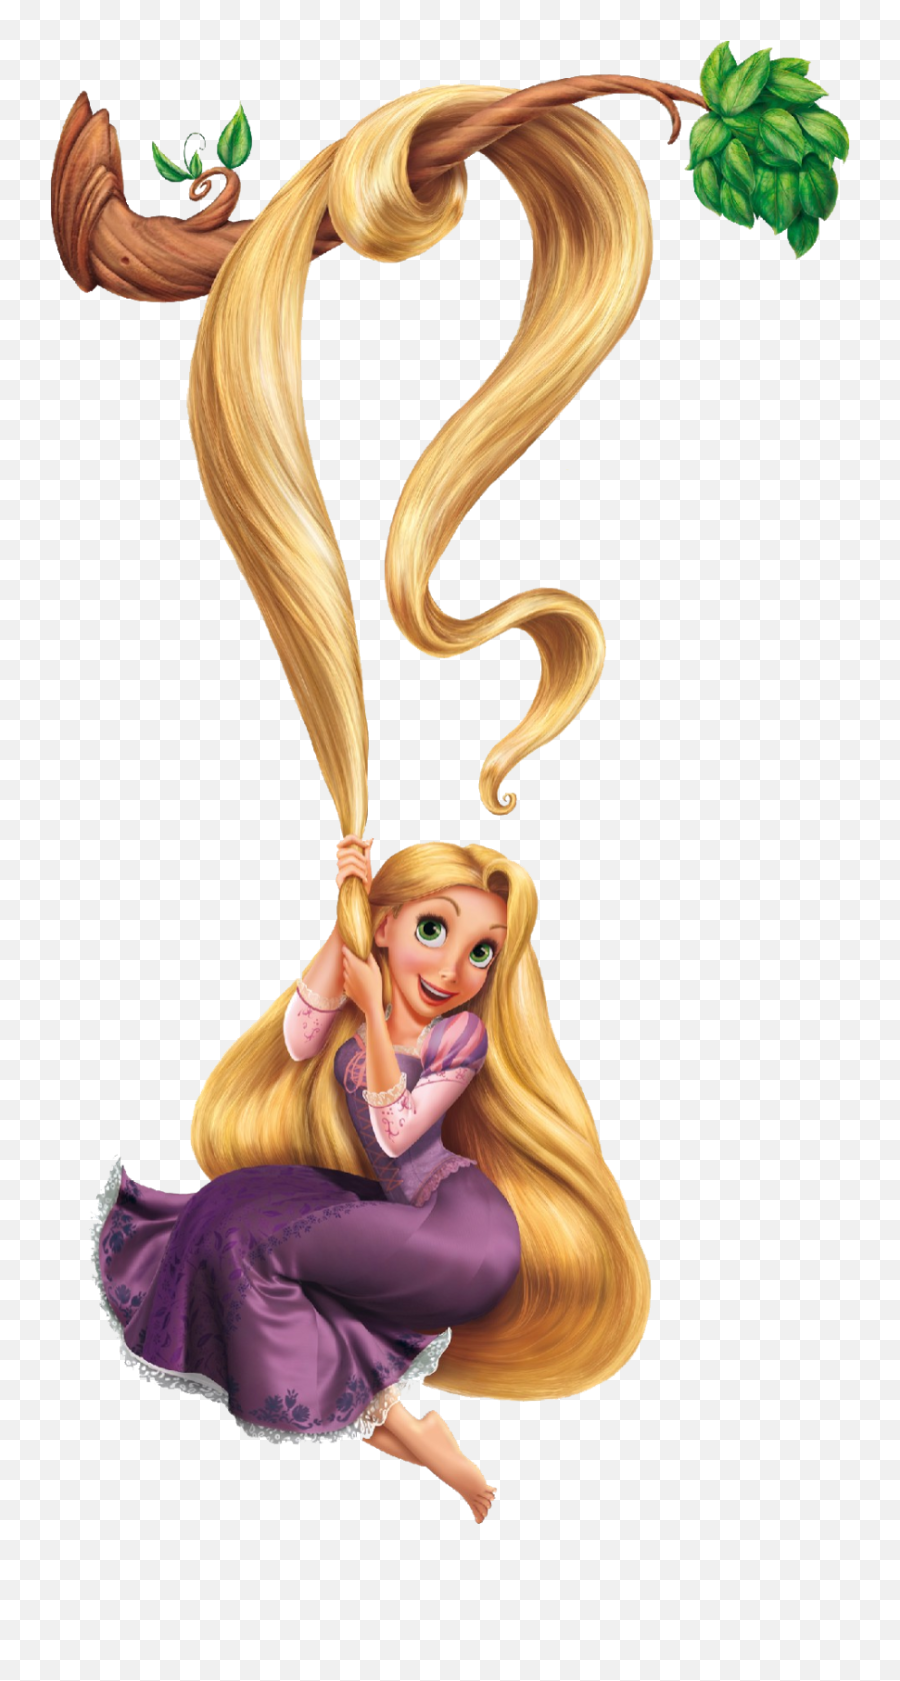 Tangled Rapunzel Flynn Rider Gothel - Rapunzel Png,Rapunzel Transparent Background